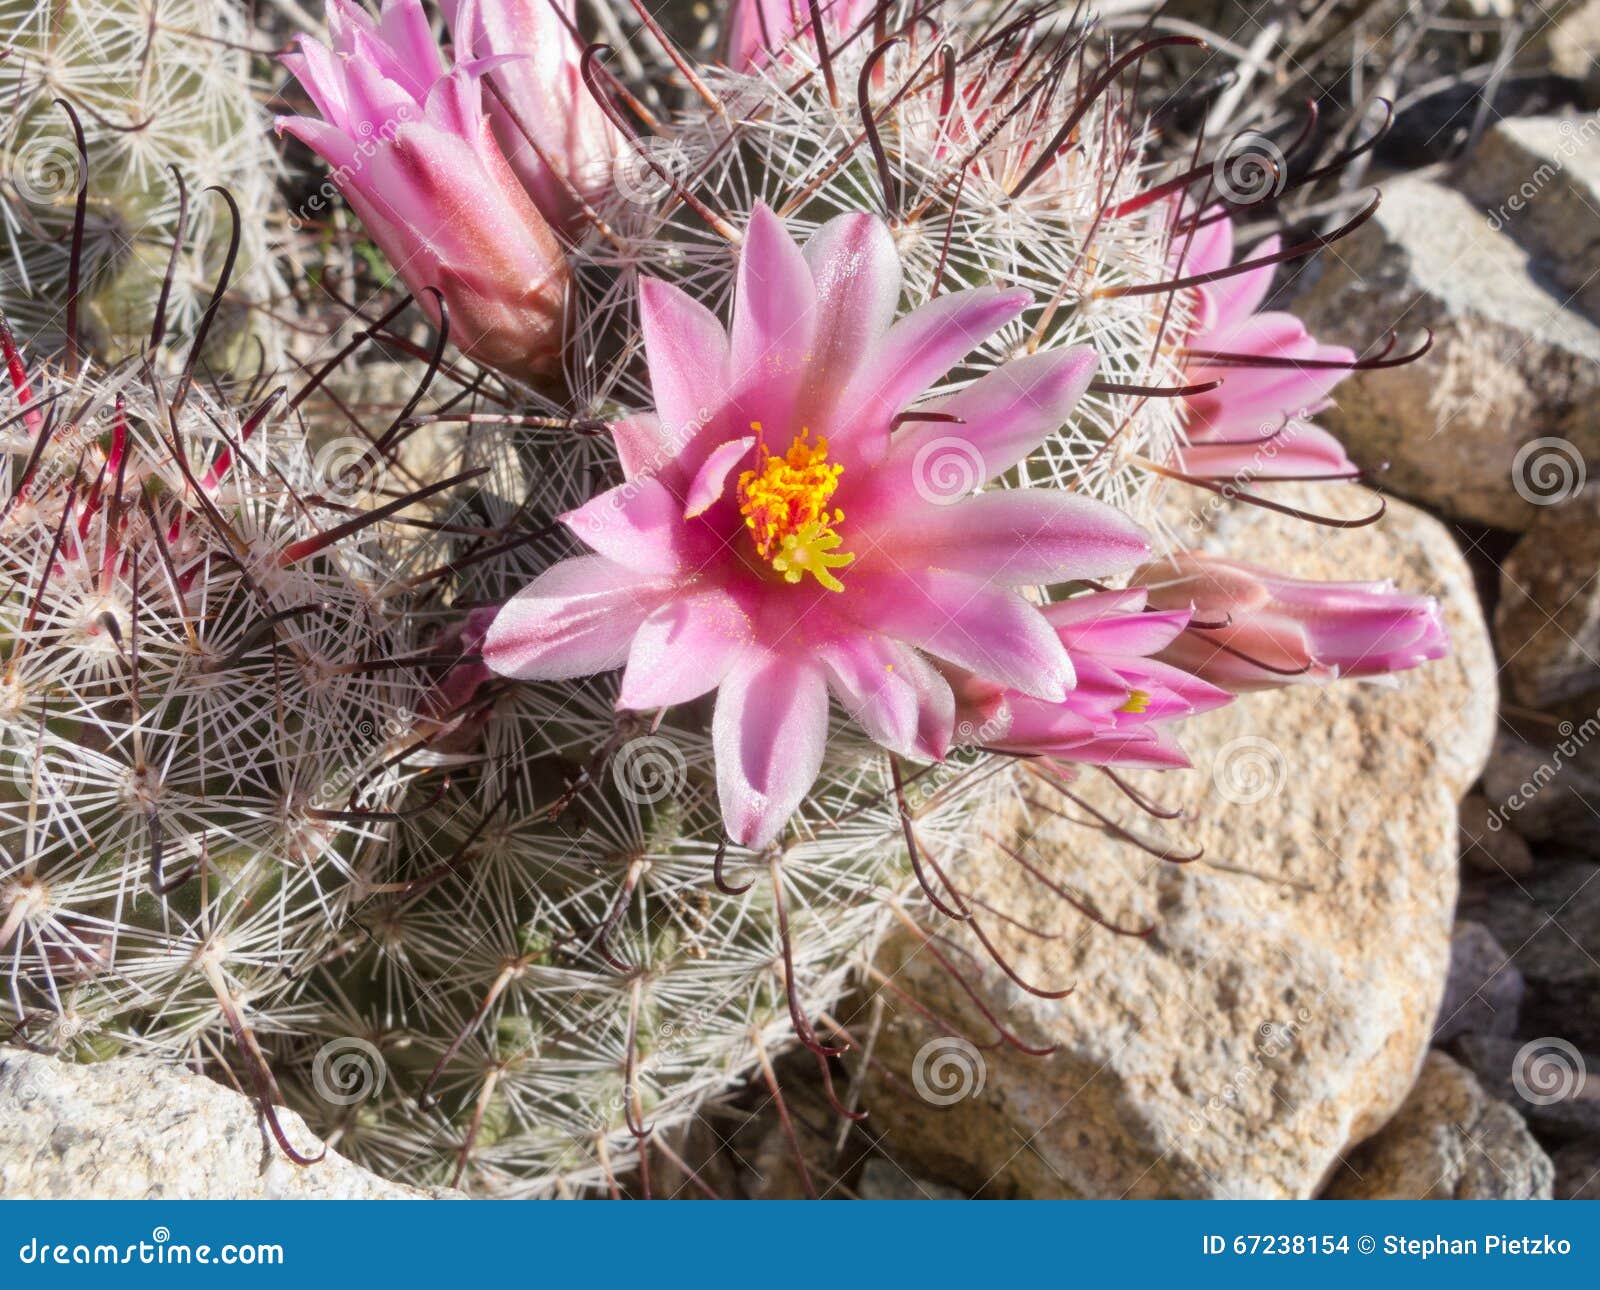 Fishhook Cactus: Pink Crown of Flowers